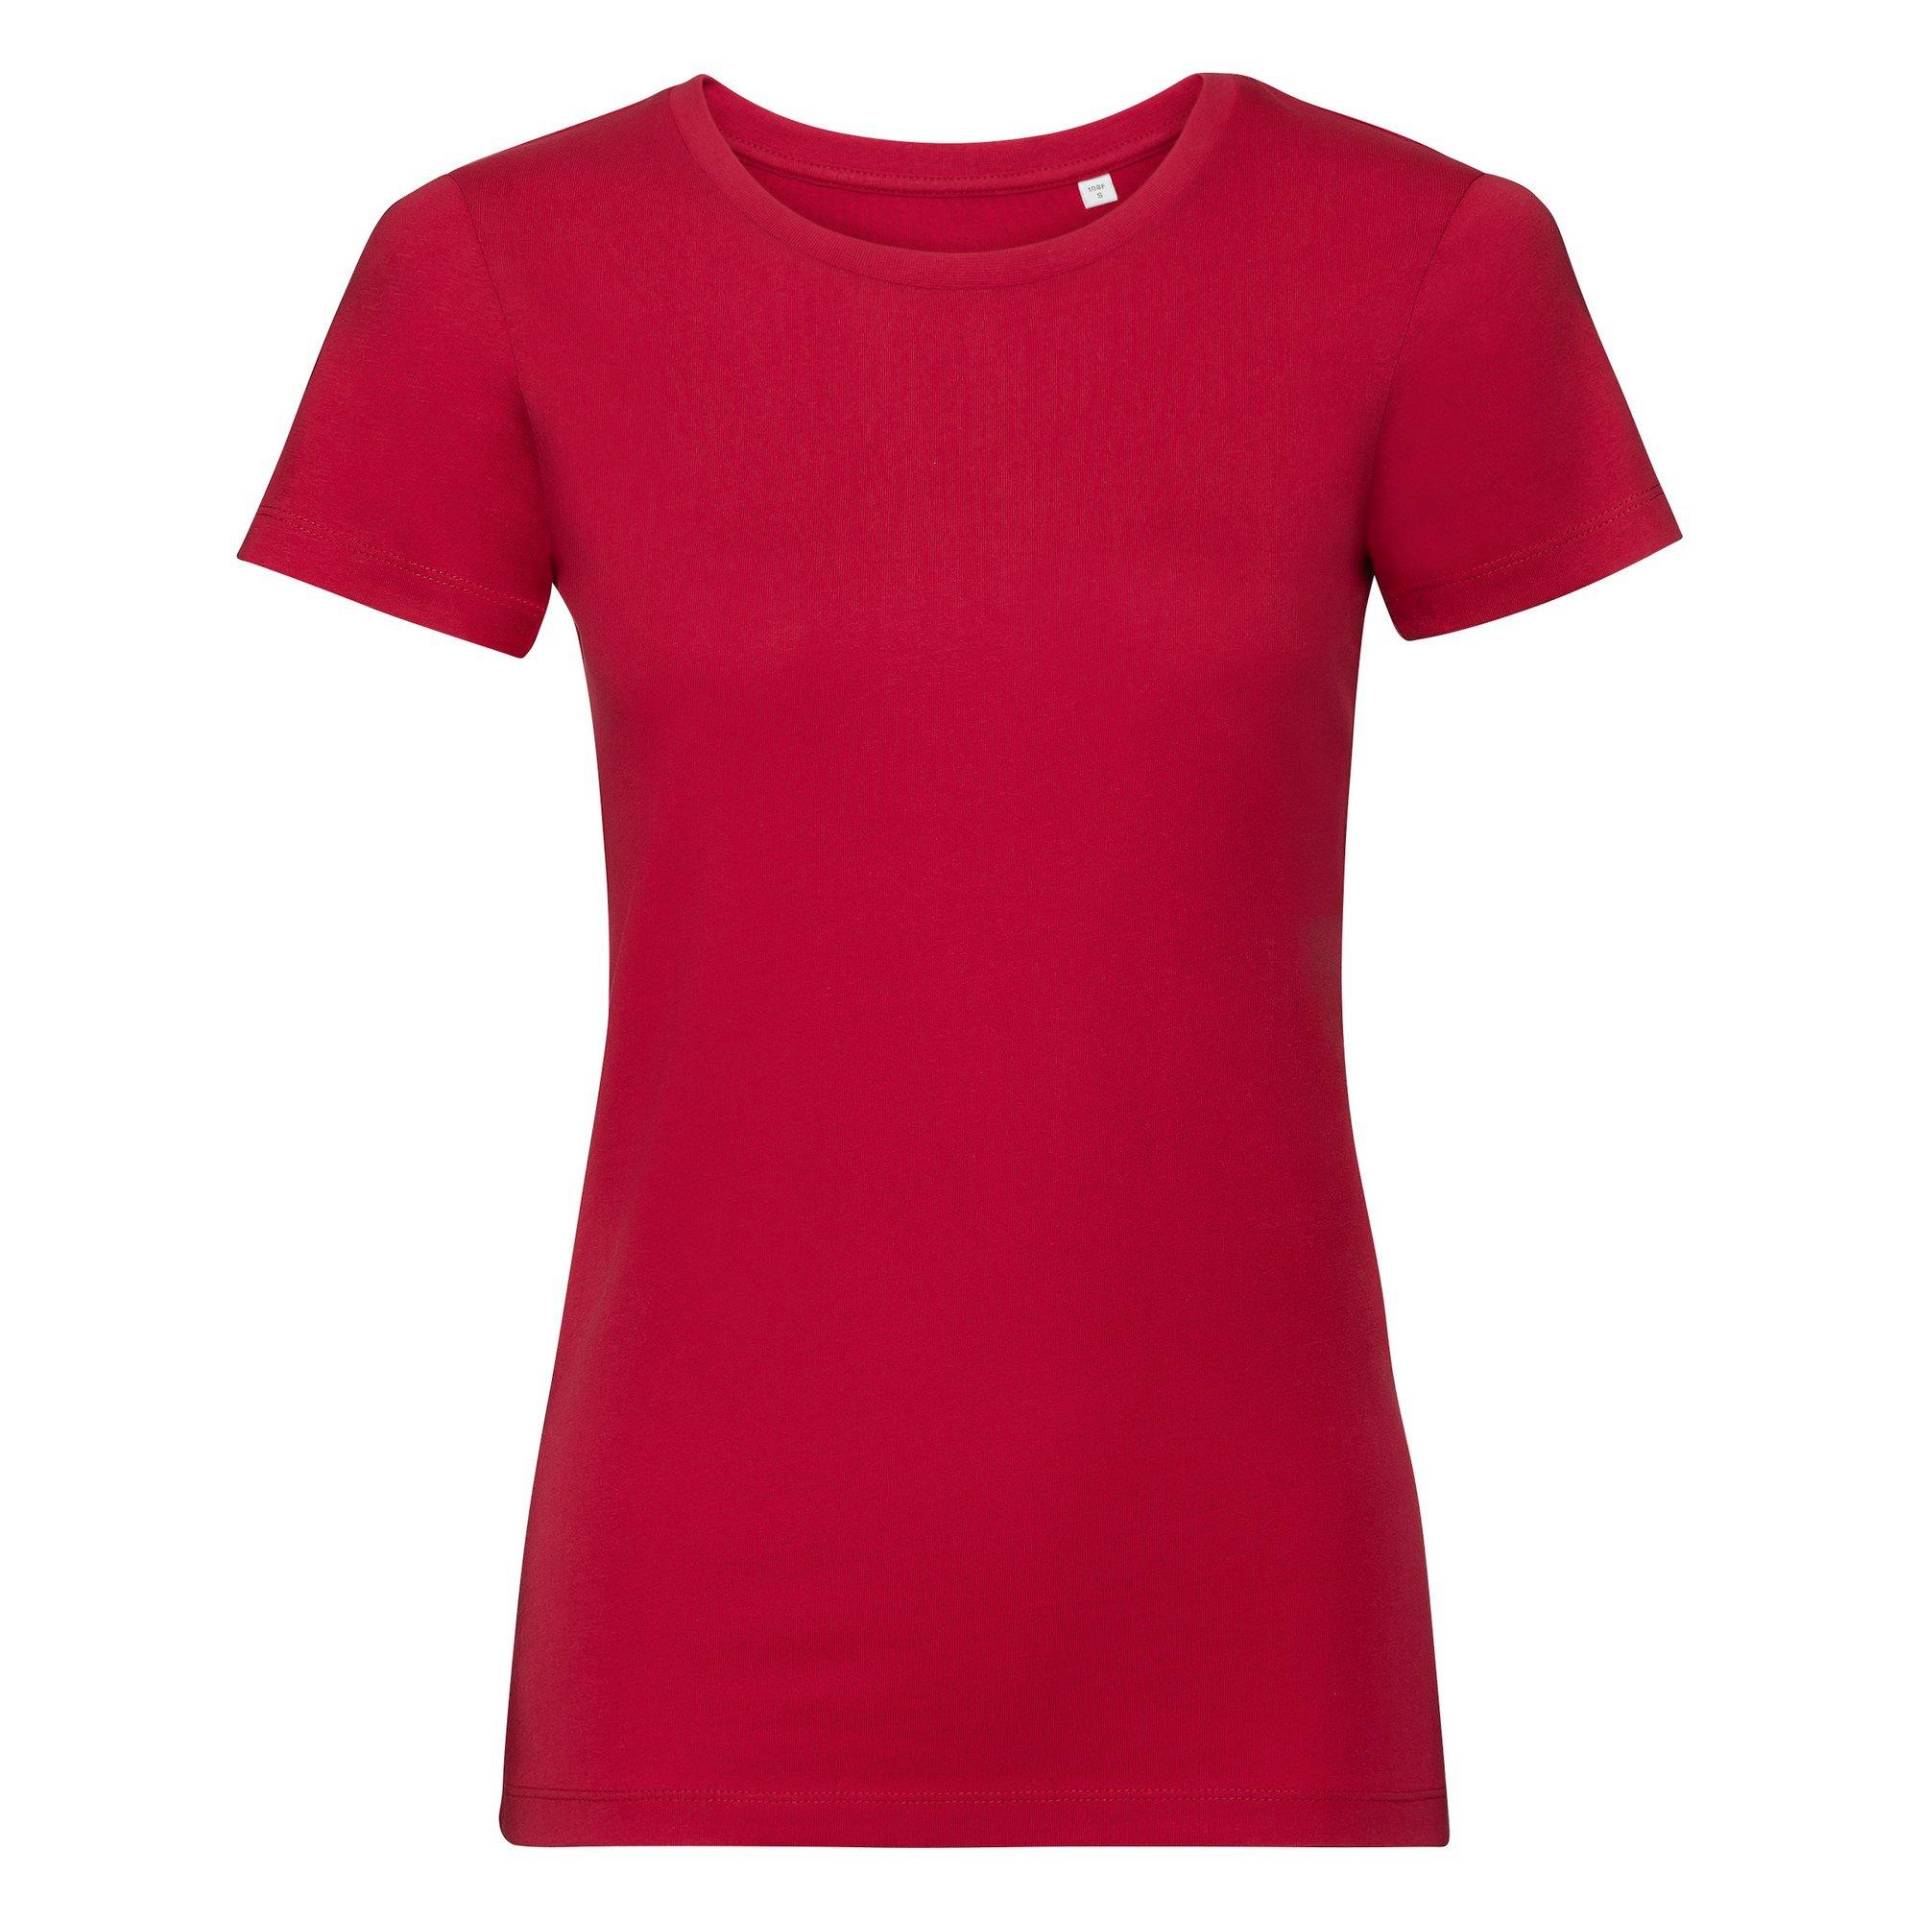 Authentic Tshirt Damen Rot Bunt L von Russell